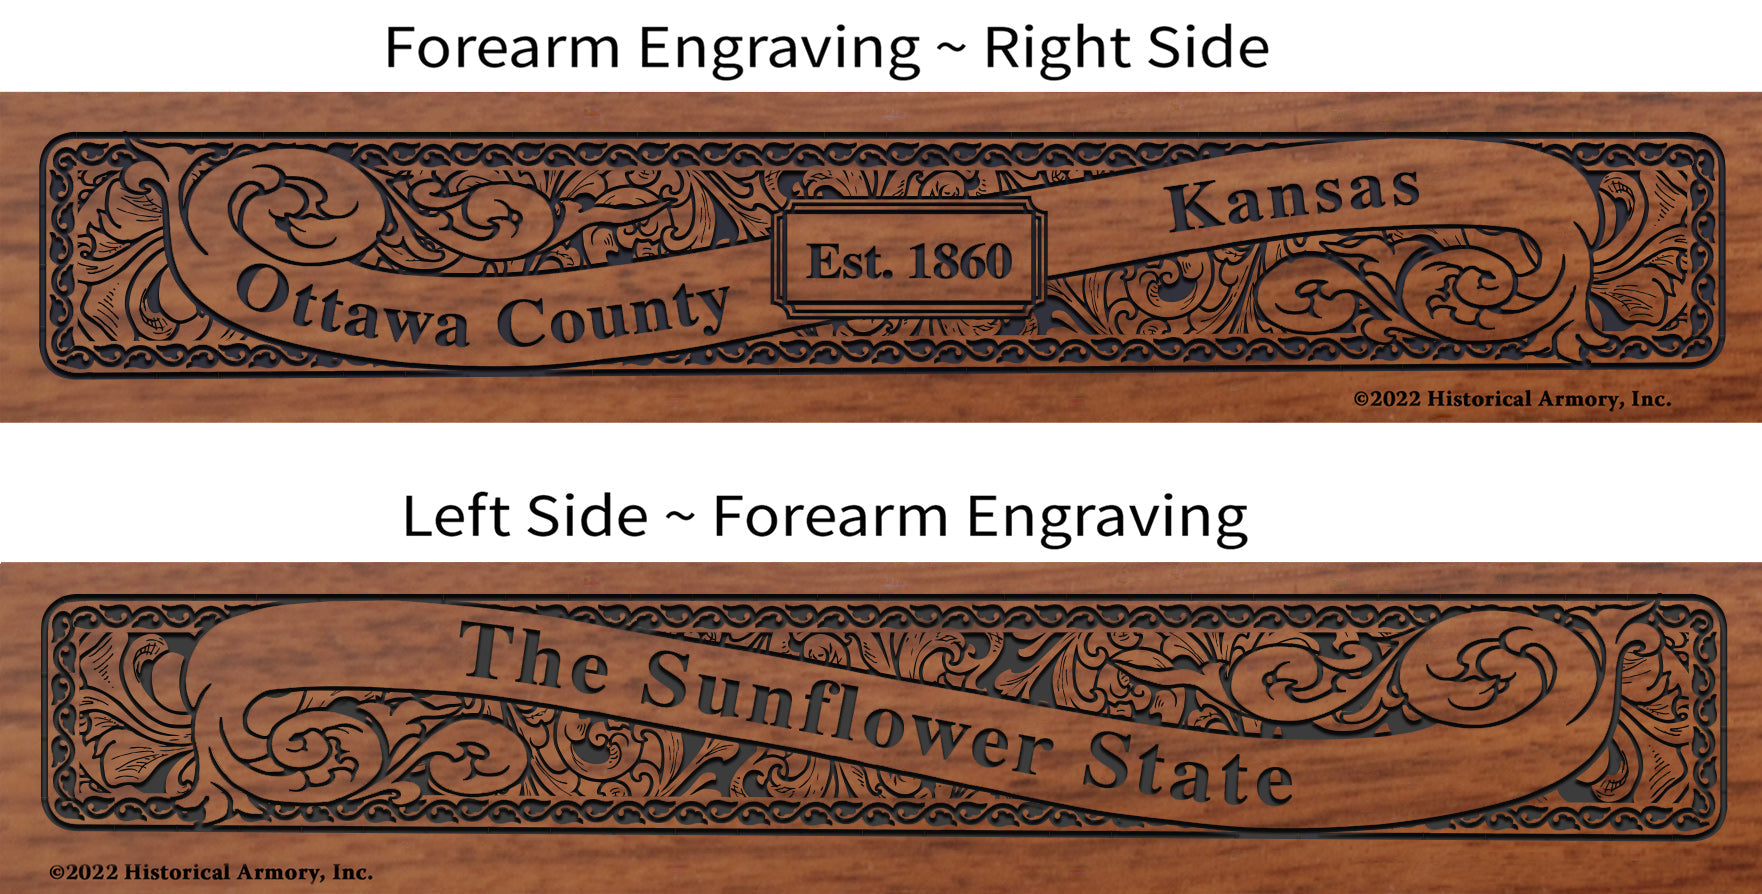 Ottawa County Kansas Engraved Rifle Forearm